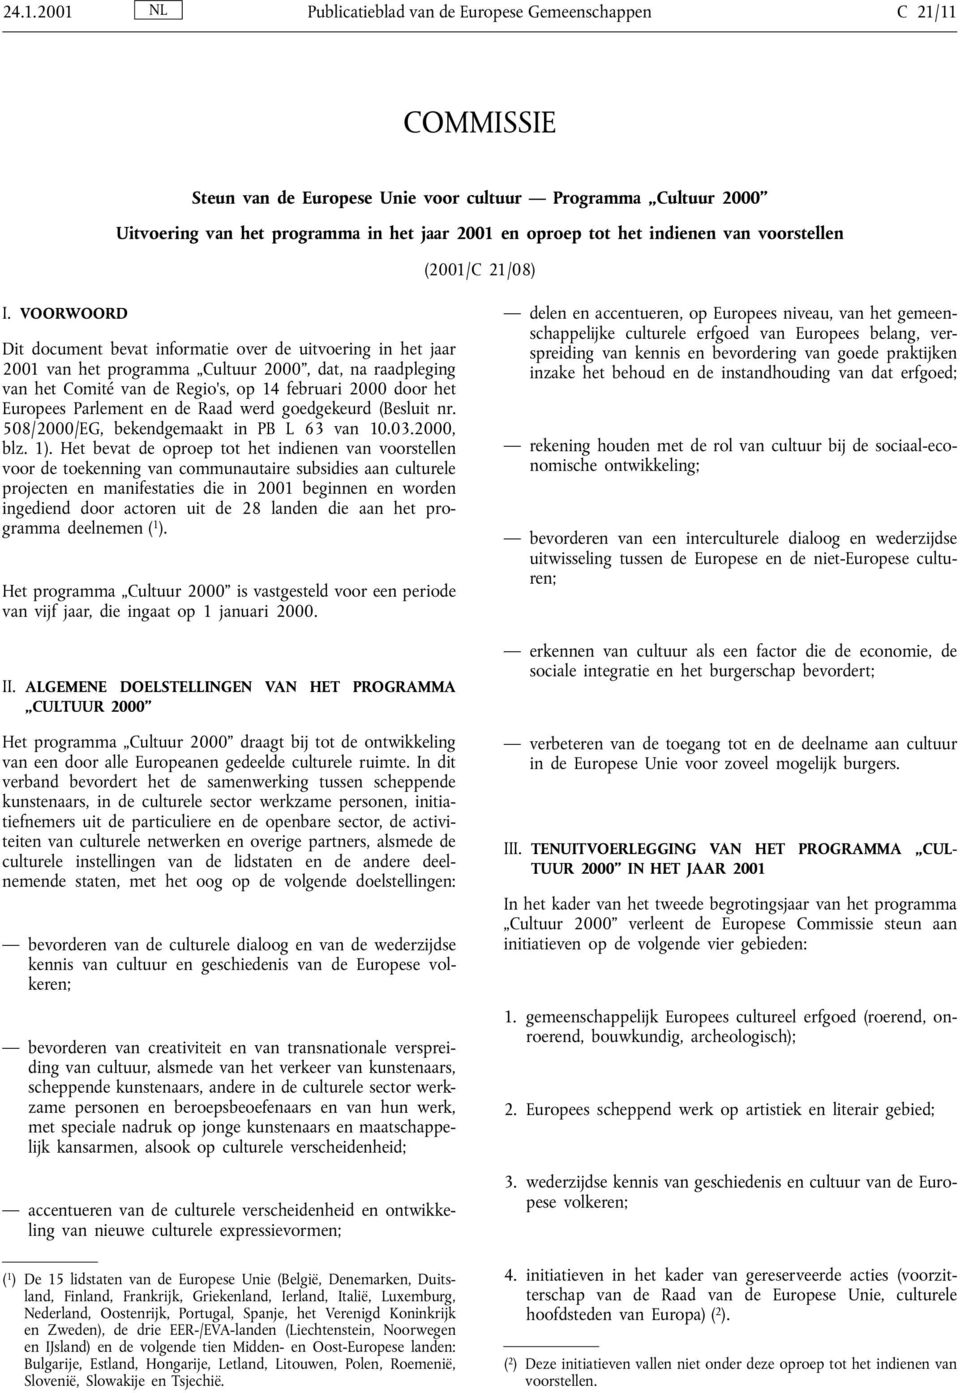 VOORWOORD Dit document bevat informatie over de uitvoering in het jaar 2001 van het programma ÐCultuur 2000, dat, na raadpleging van het ComitØ van de Regio s, op 14 februari 2000 door het Europees